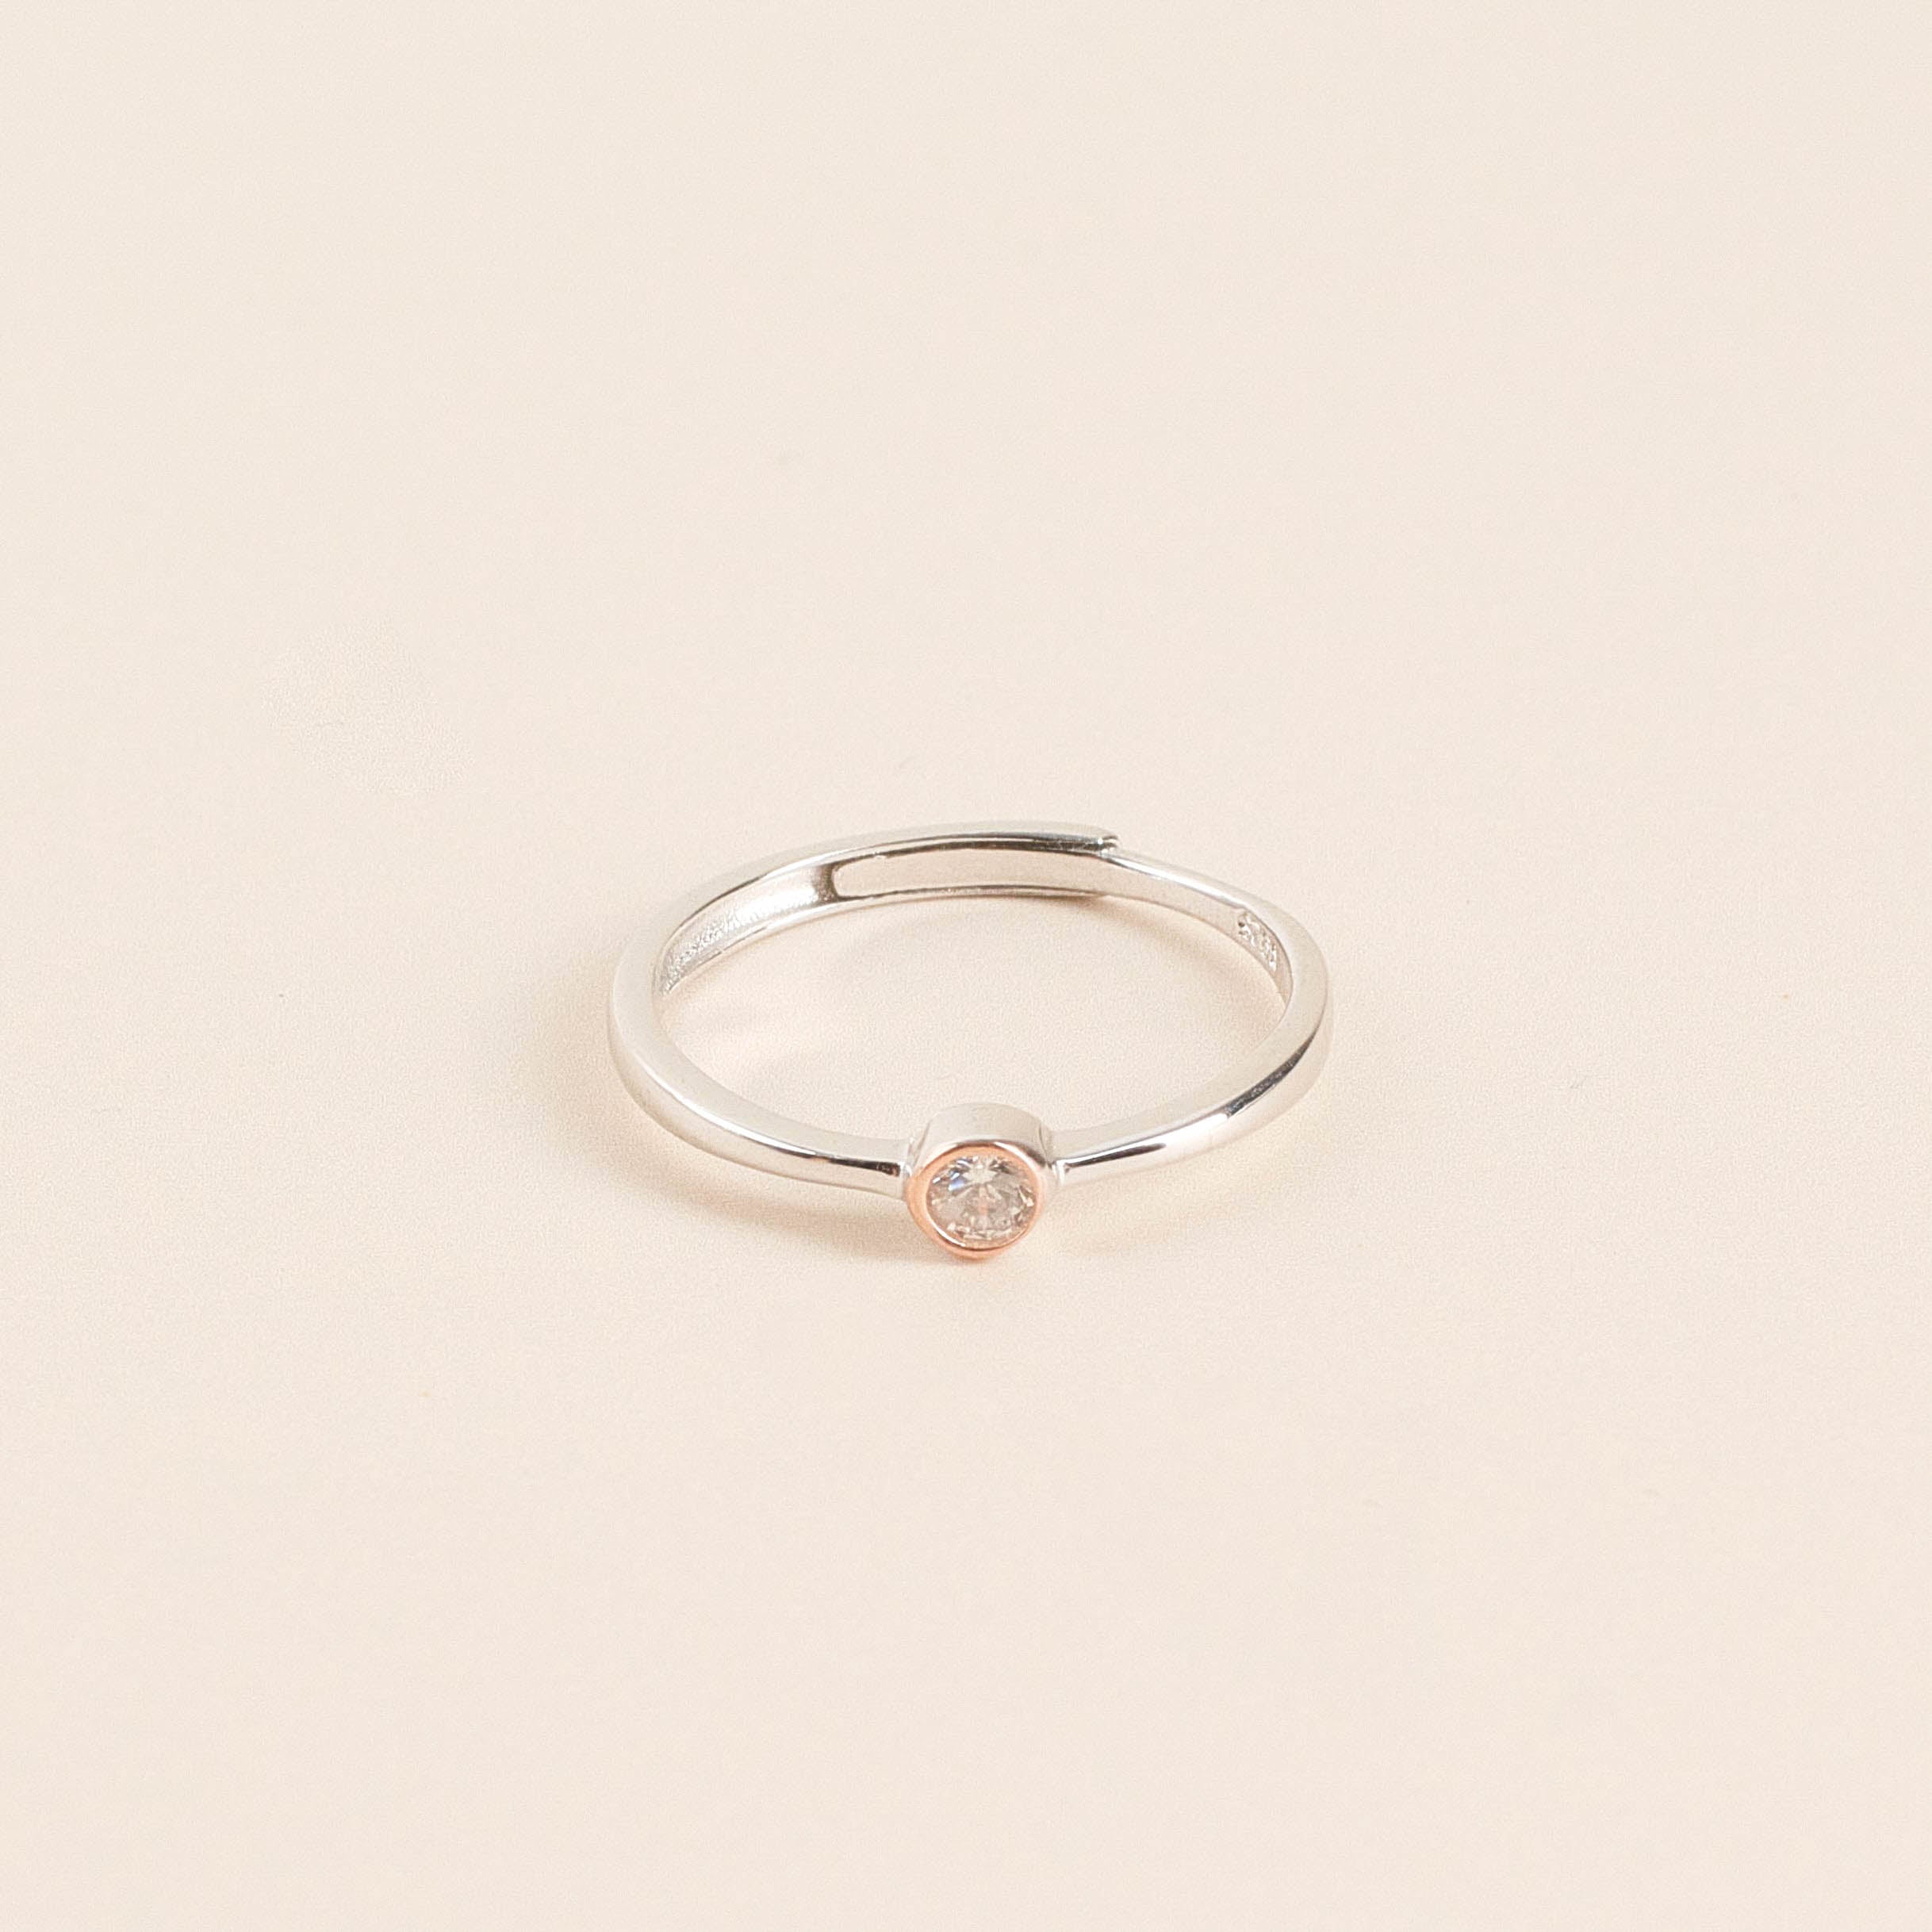 XO Couple Ring (Adjustable)